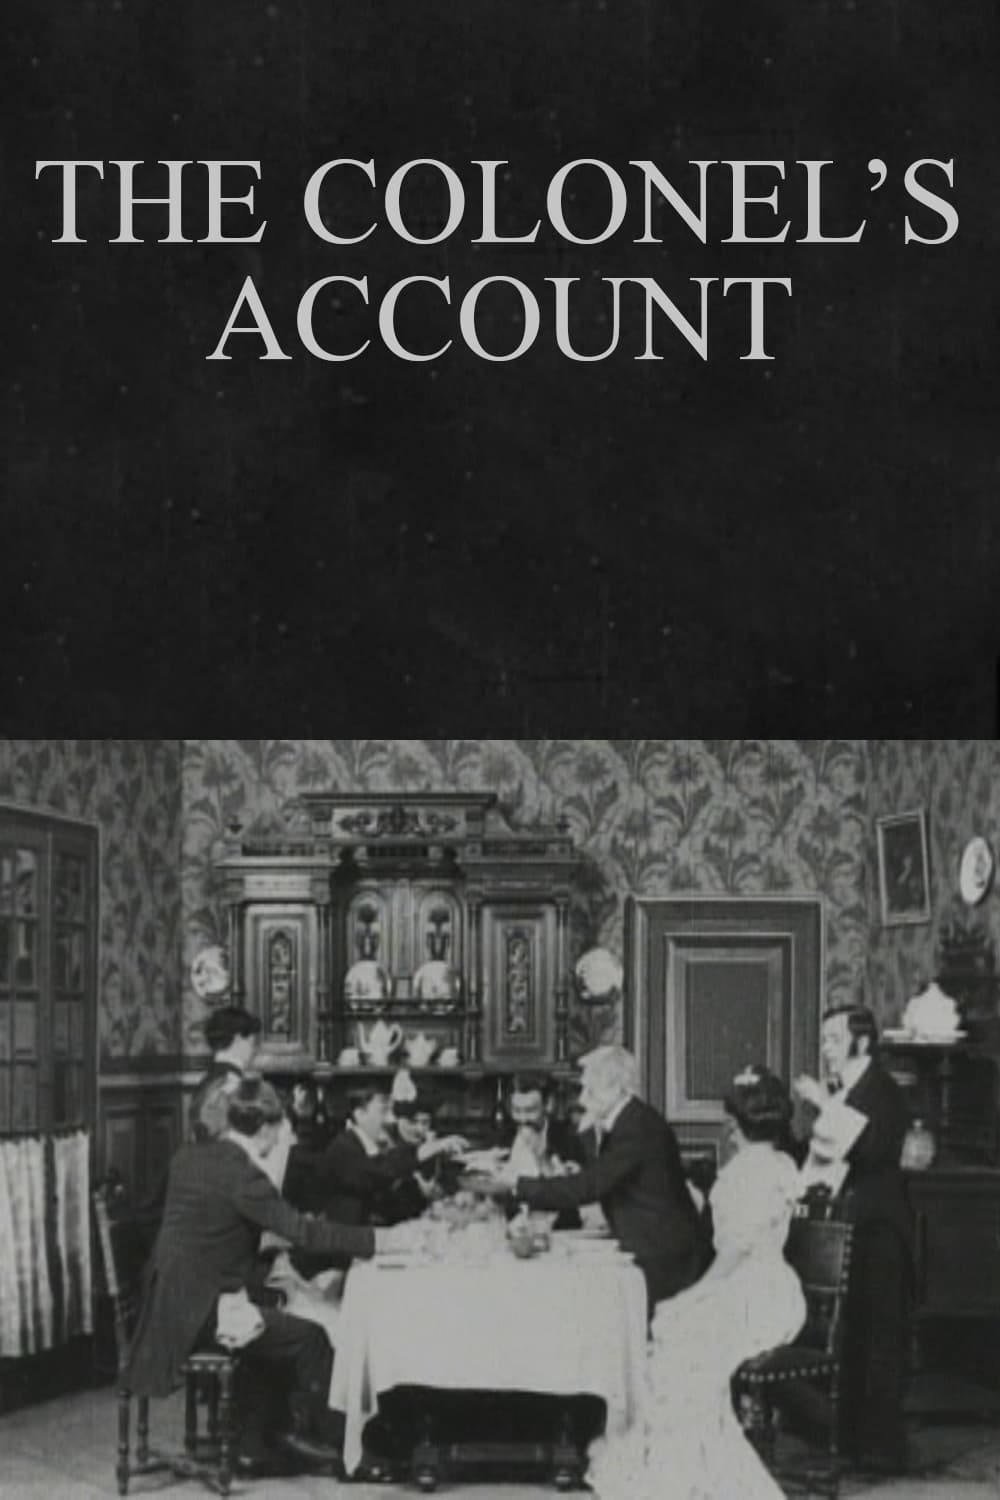 The Colonel's Account